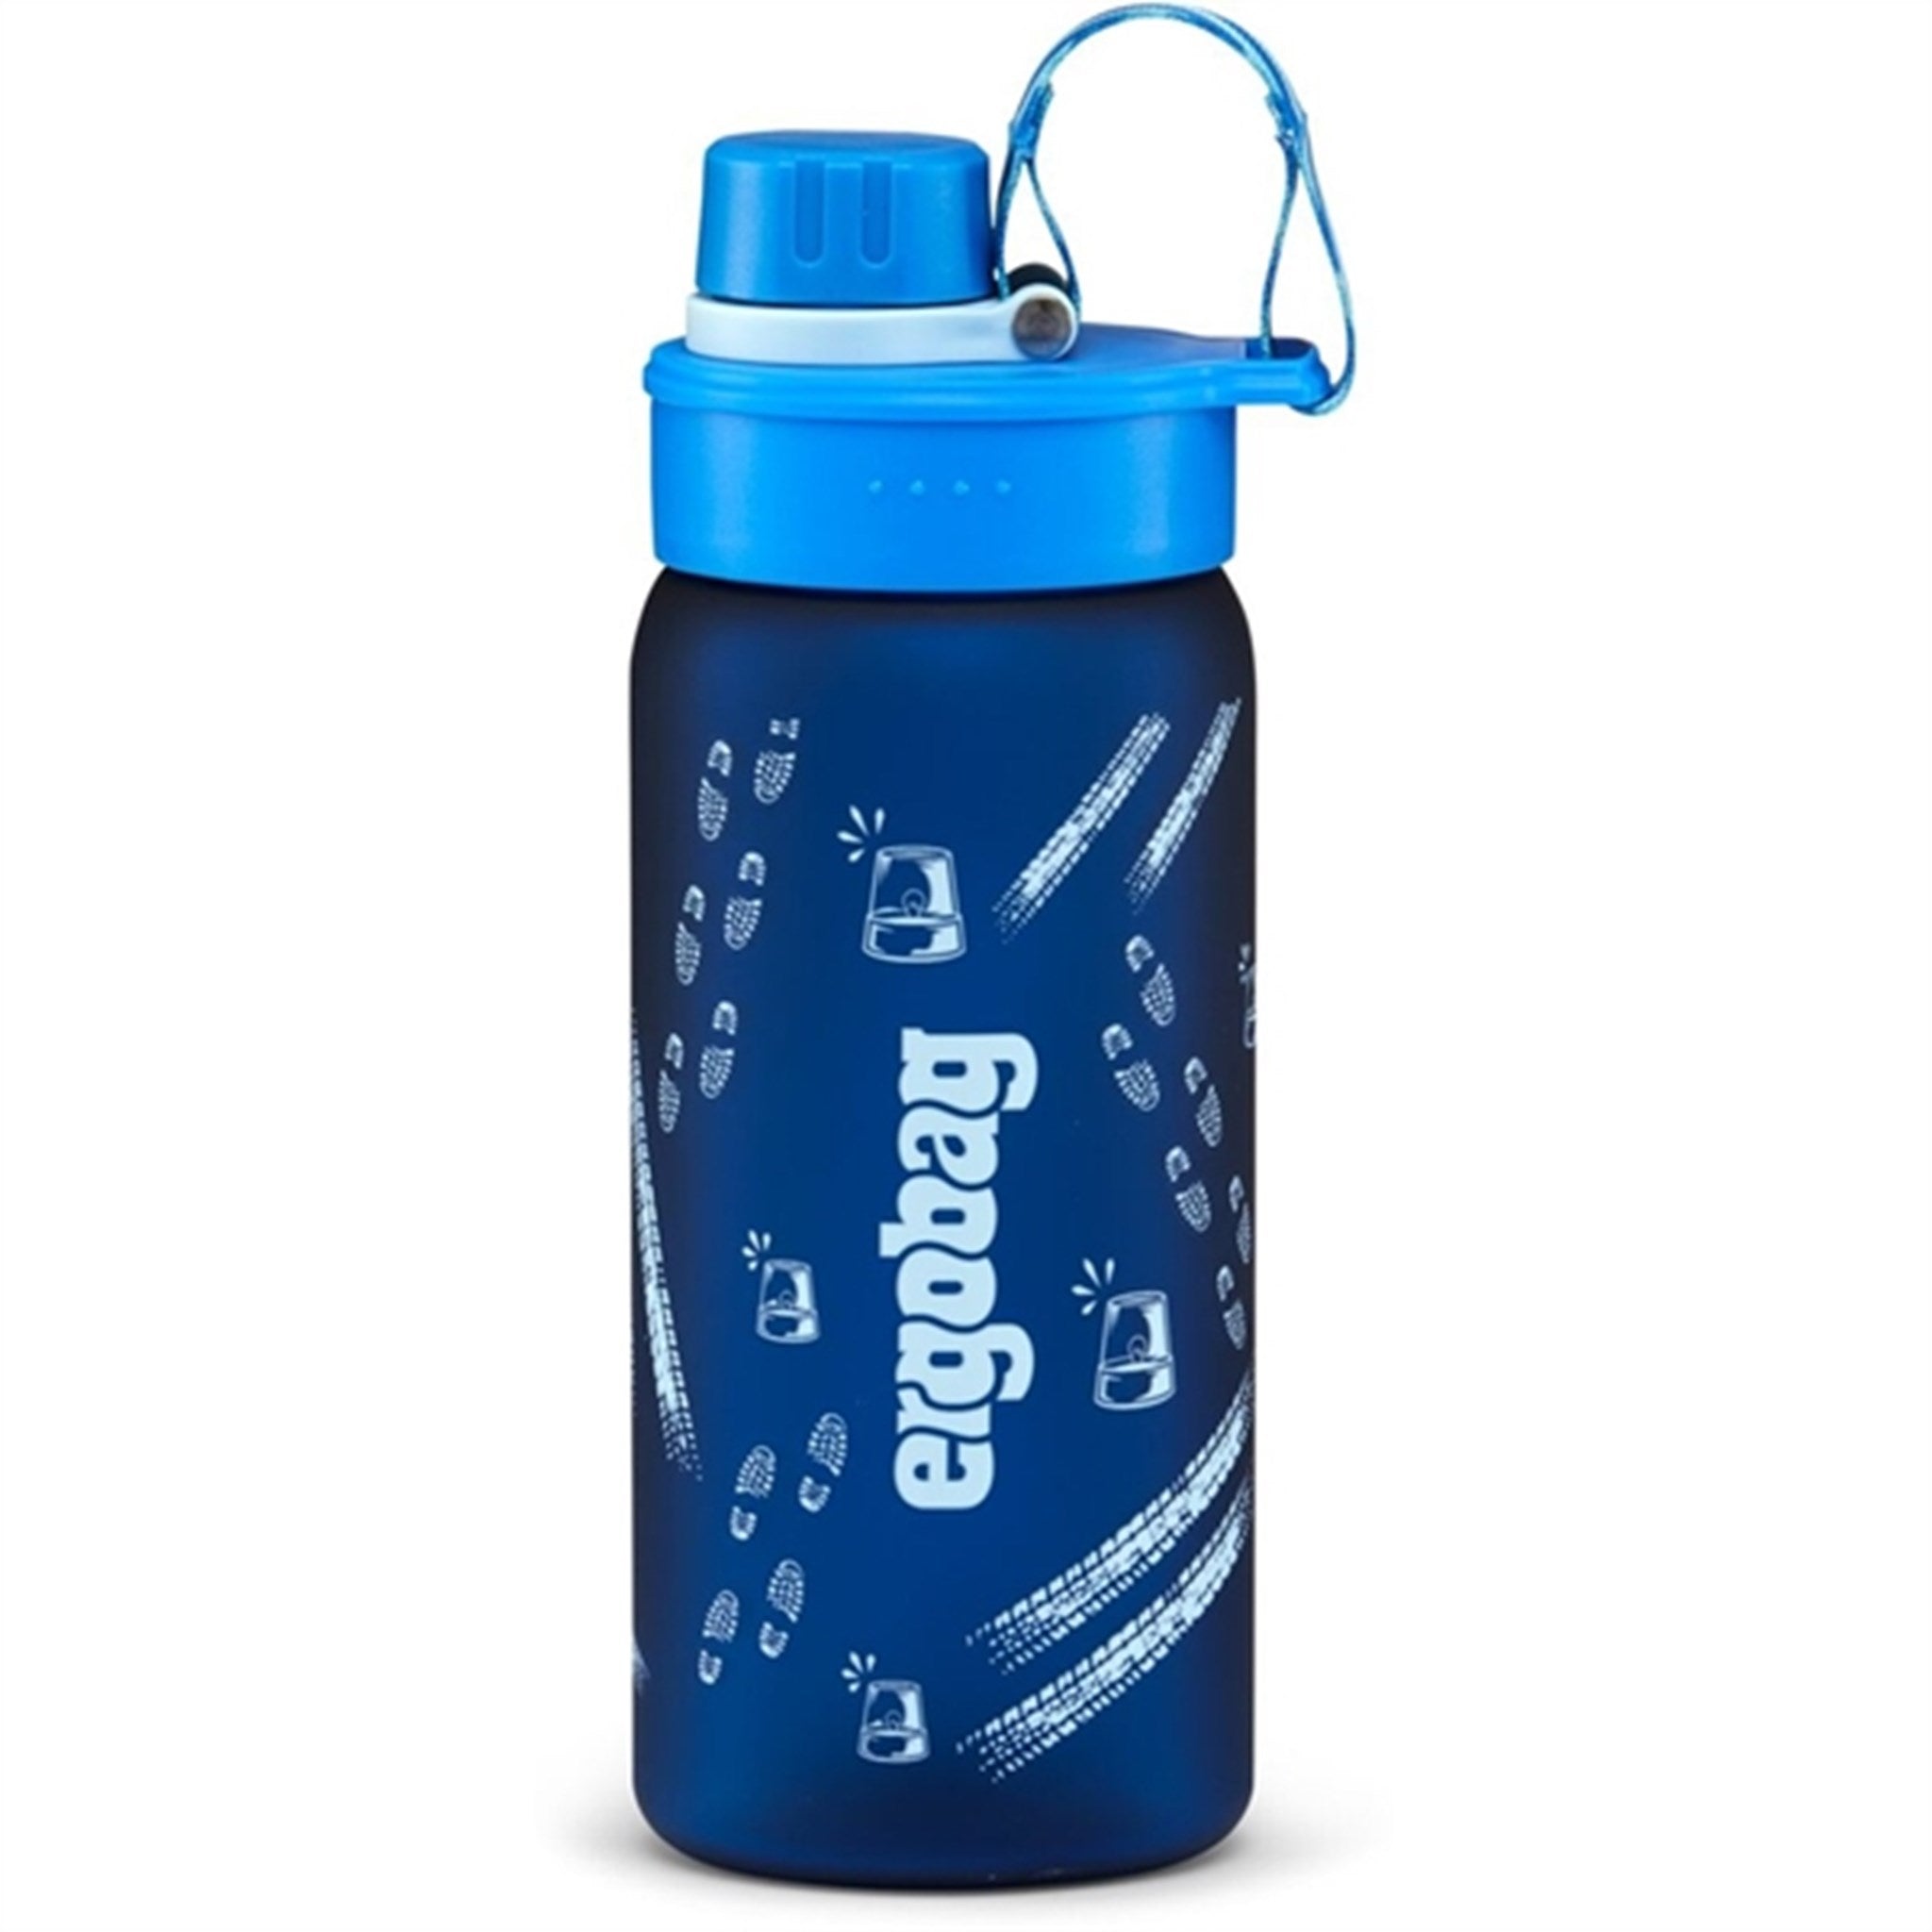 Ergobag Drink Bottle Bluelight